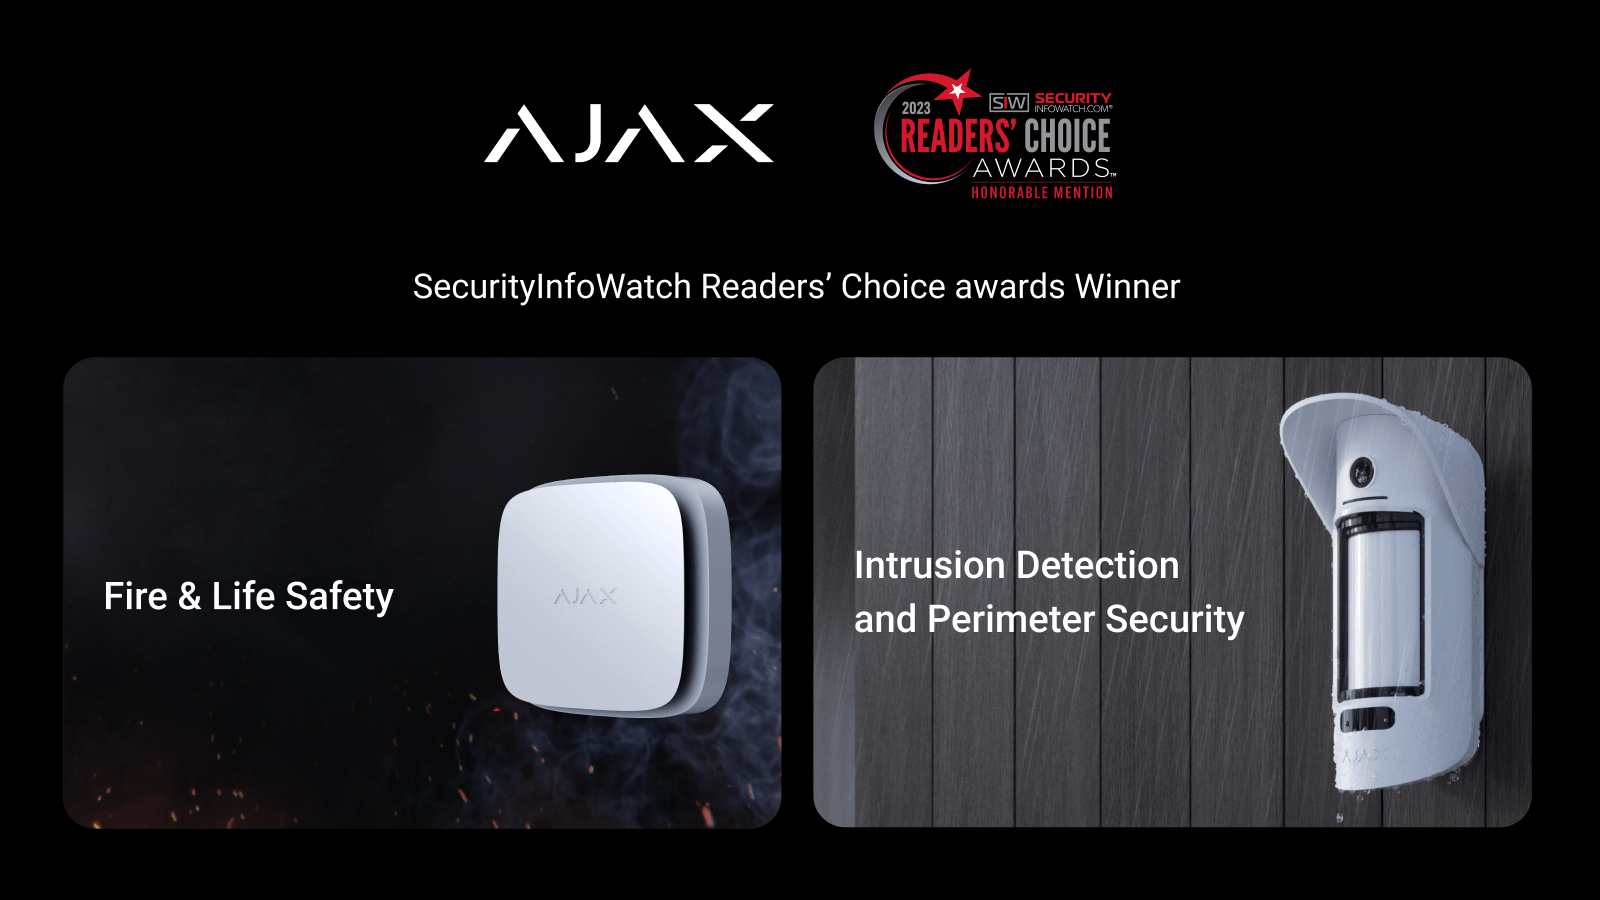 Ajax Systems gewinnt in 2 Kategorien bei den Readers' Choice Awards von SecurityInfoWatch.com in den USA